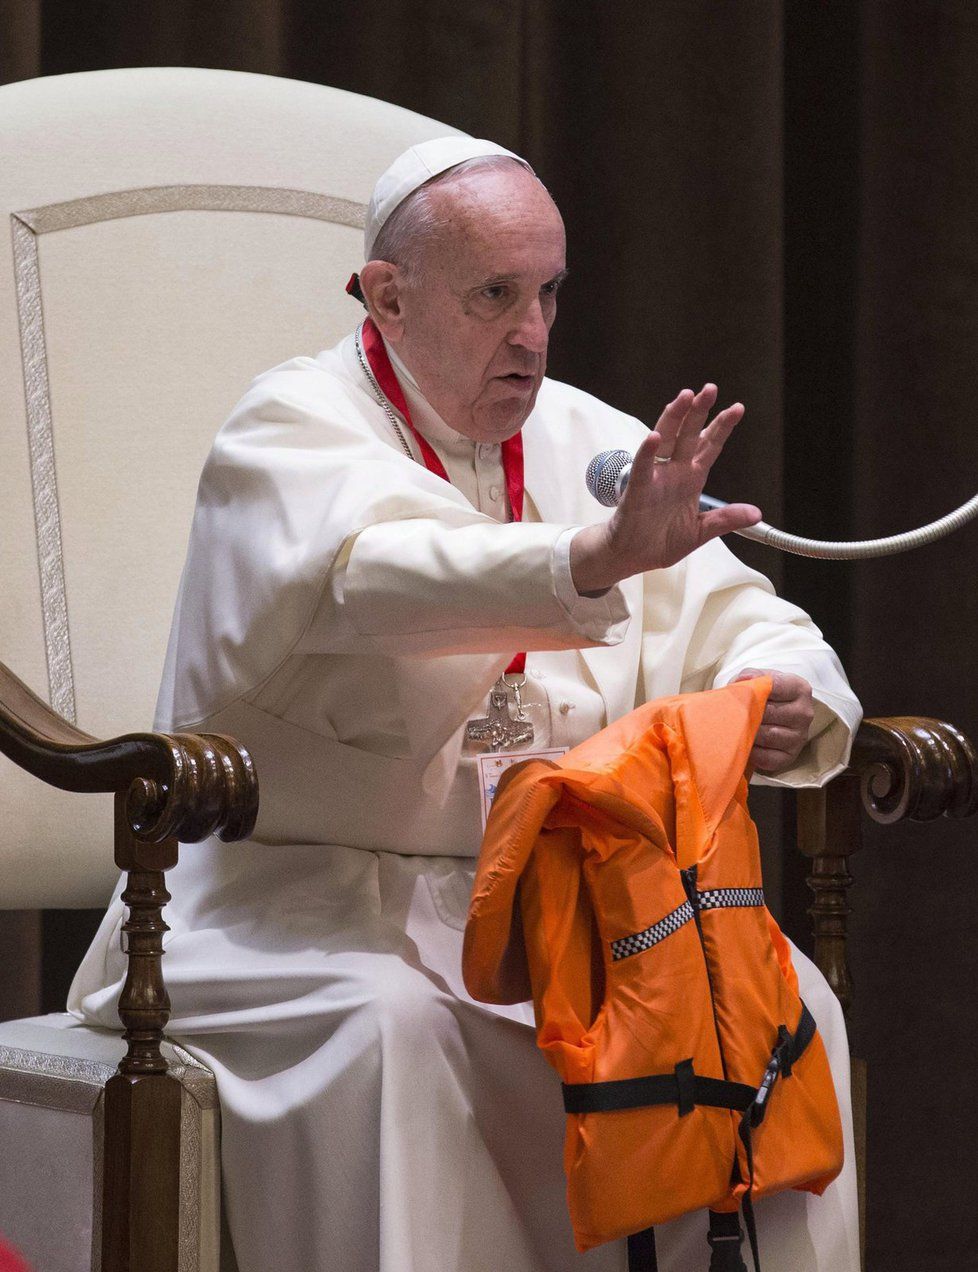 Papež držel v ruce vestu utonulé dívky a kázal: Uprchlíci nejsou nebezpeční, jsou v nebezpečí.